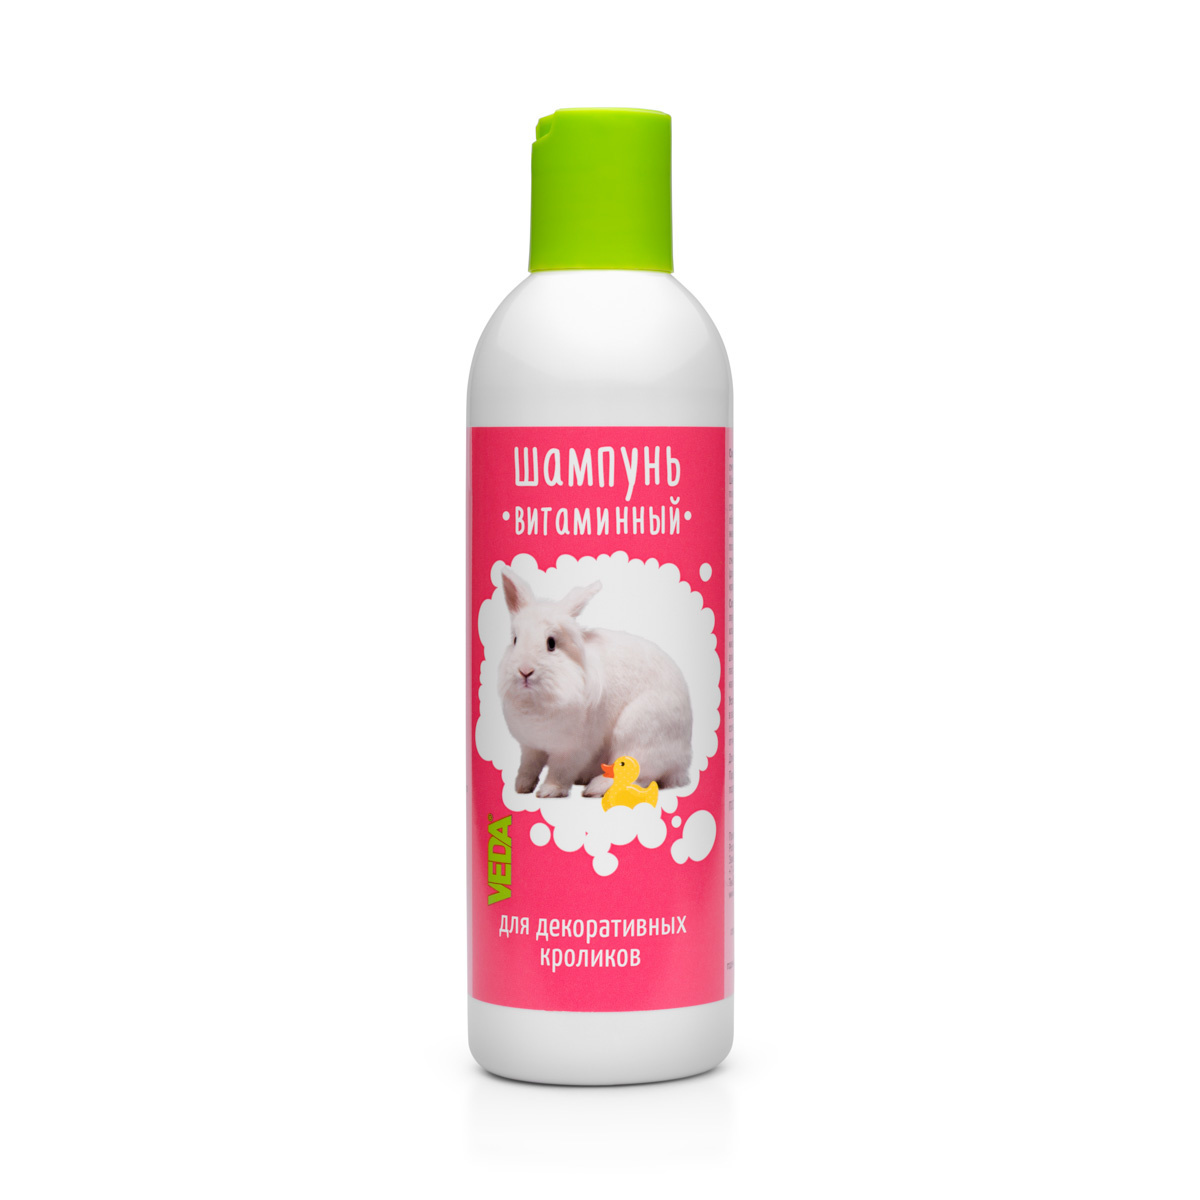 Веда Веда шампунь витаминный для кроликов (220 г) веда веда шампунь для белоснежных кошек 220 г